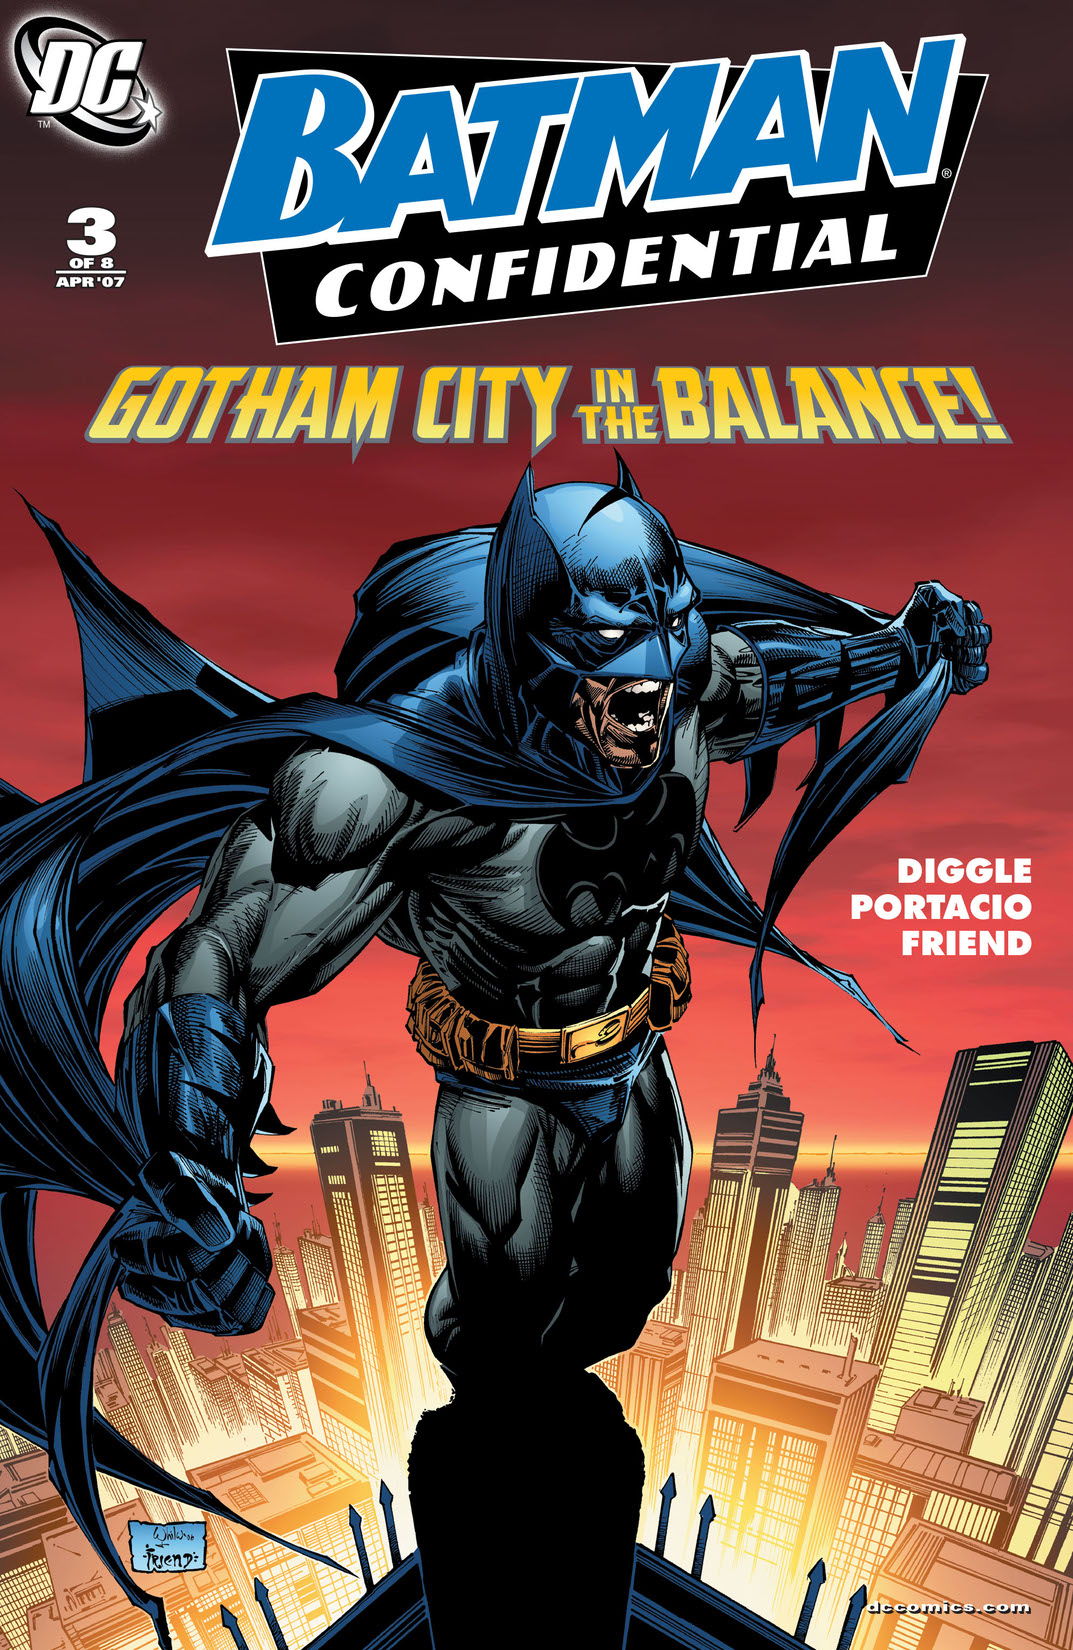 Batman Confidential #3 preview images